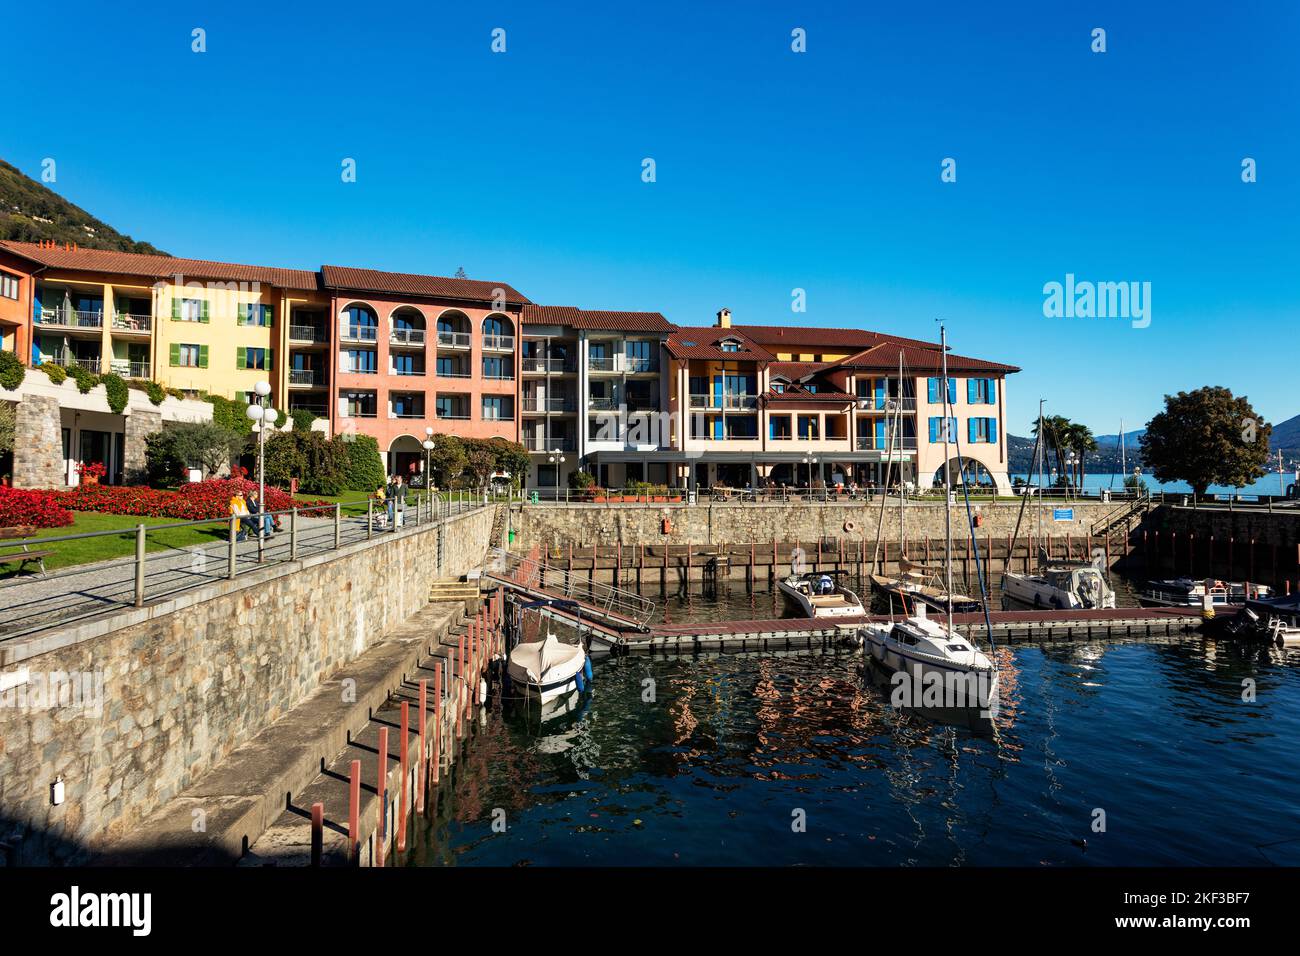 Hapimag Resort Cannero, Cannero Riviera, Lago Maggiore, Verban-Cusio-Ossola, Piedmont, Italy Stock Photo